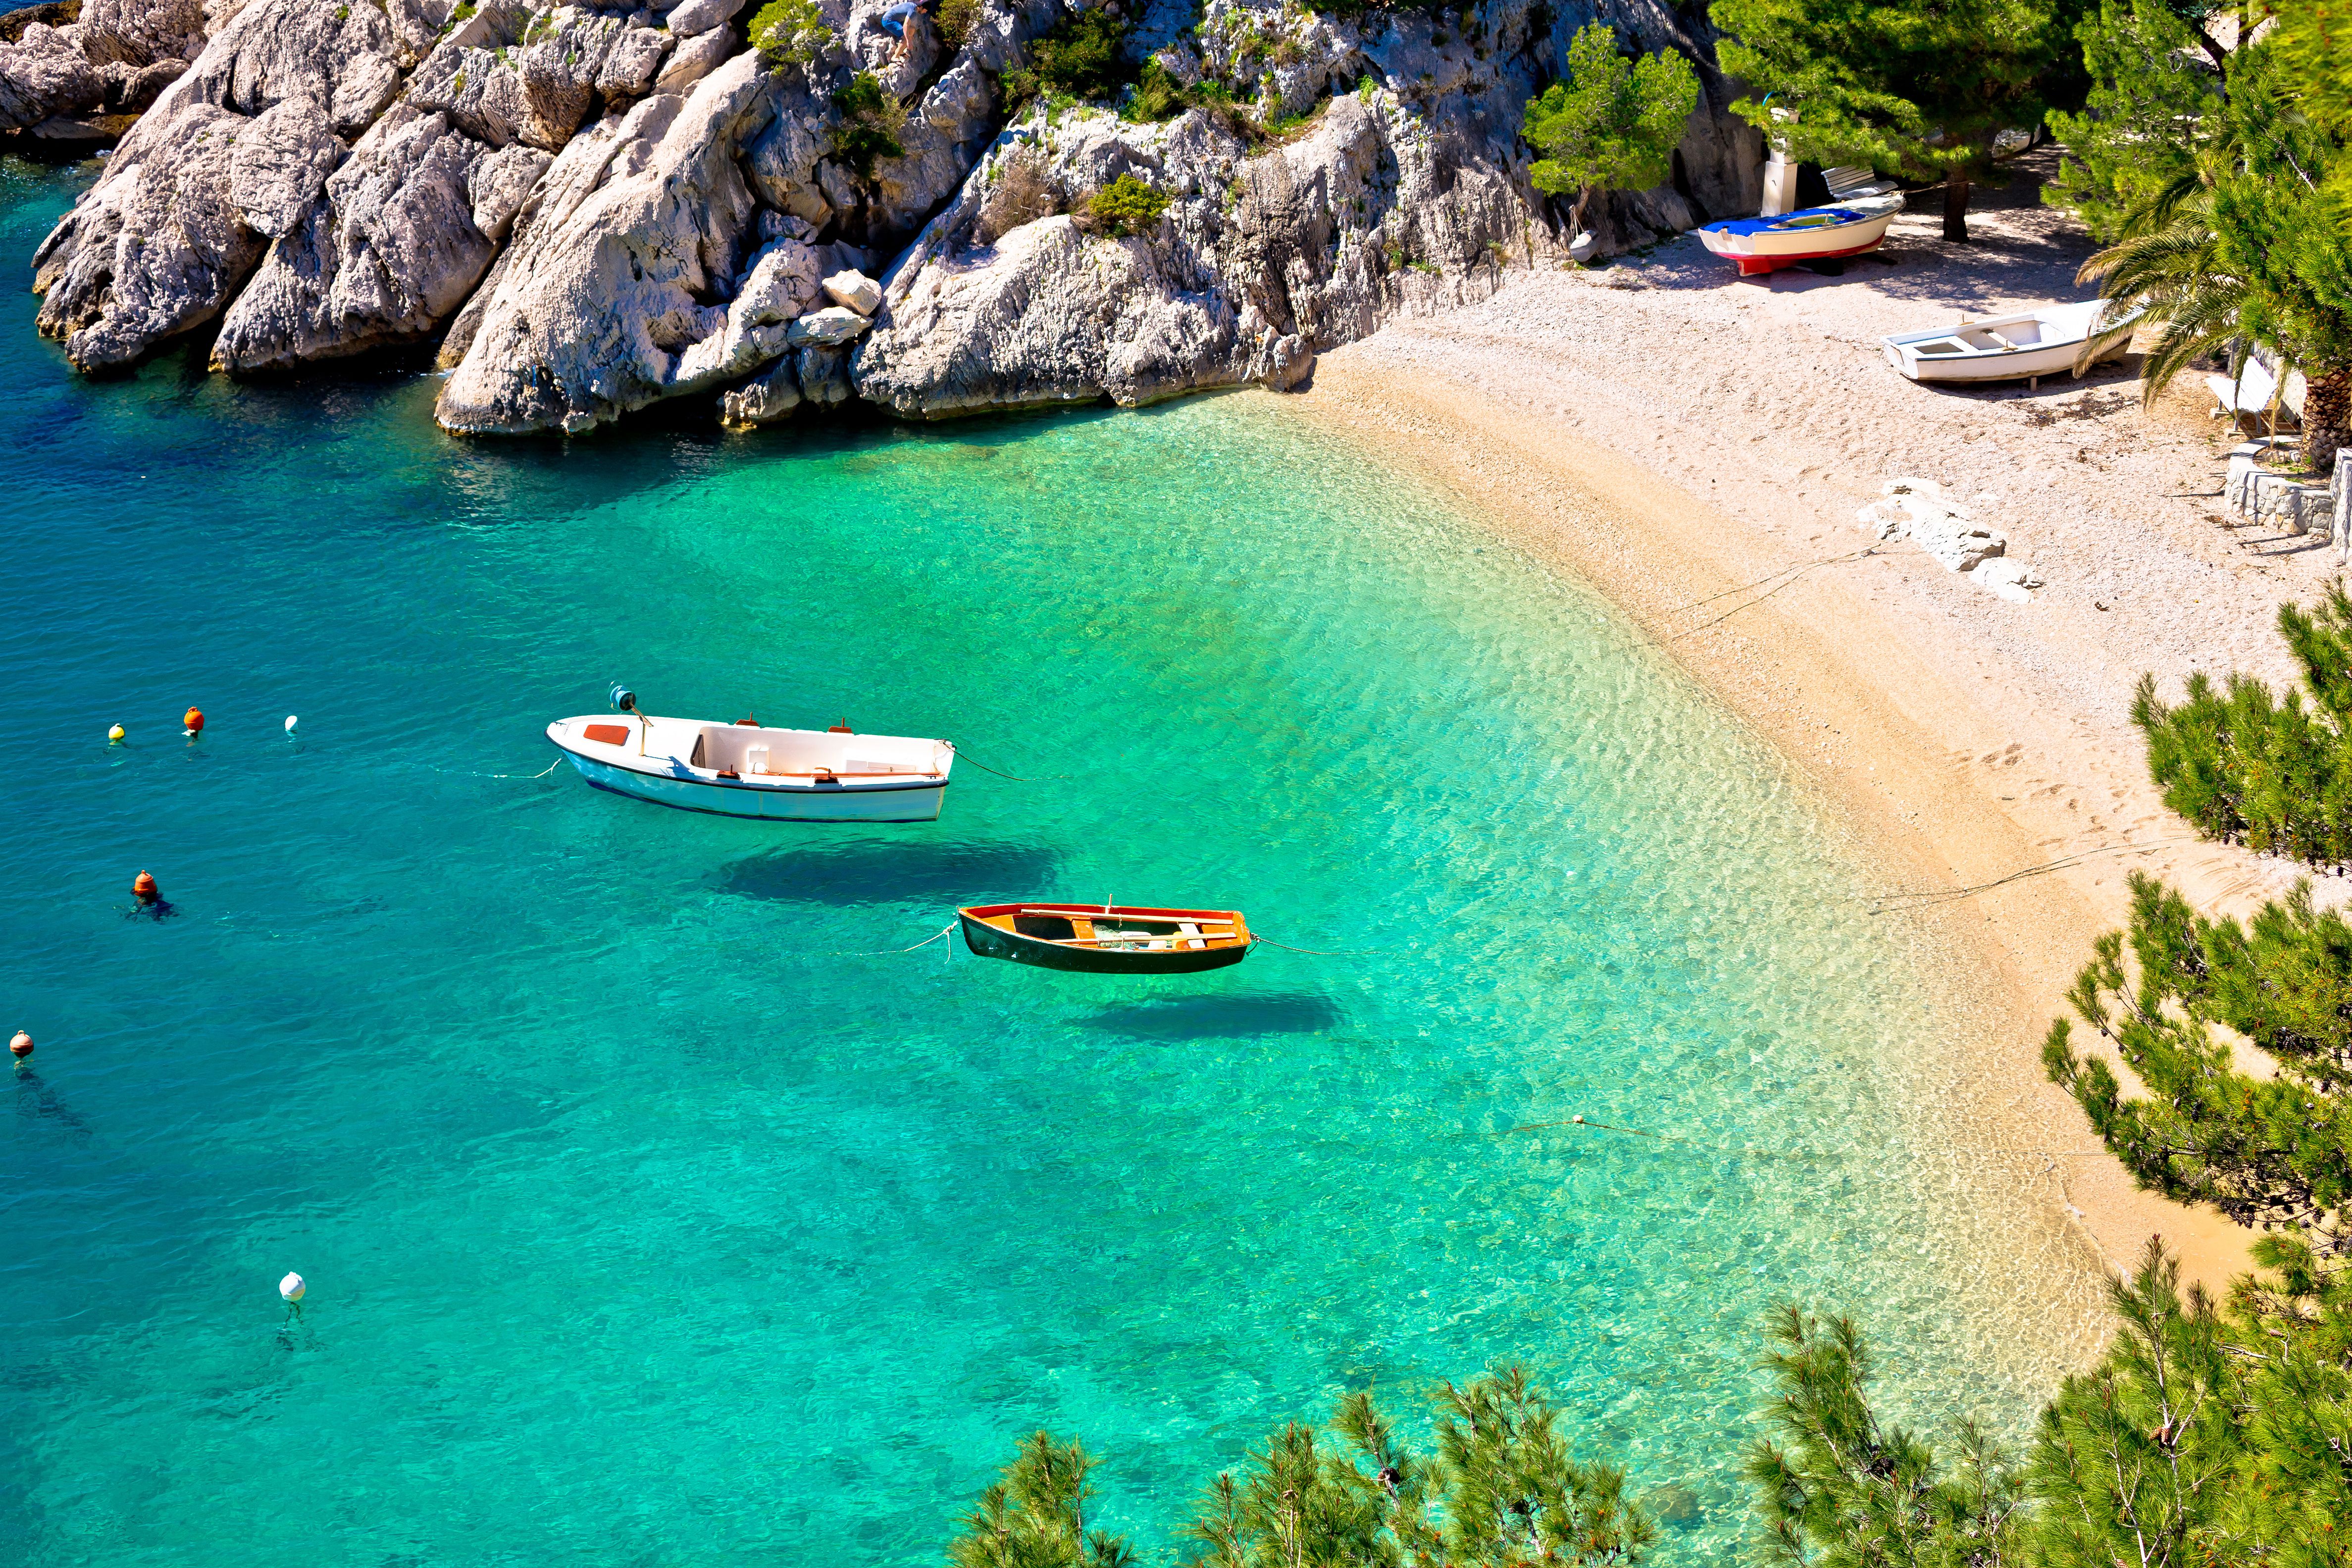 Vogue izdvojio osam najljepših hrvatskih plaža: "Ova je plaža dokaz da mediteranski raj još postoji"